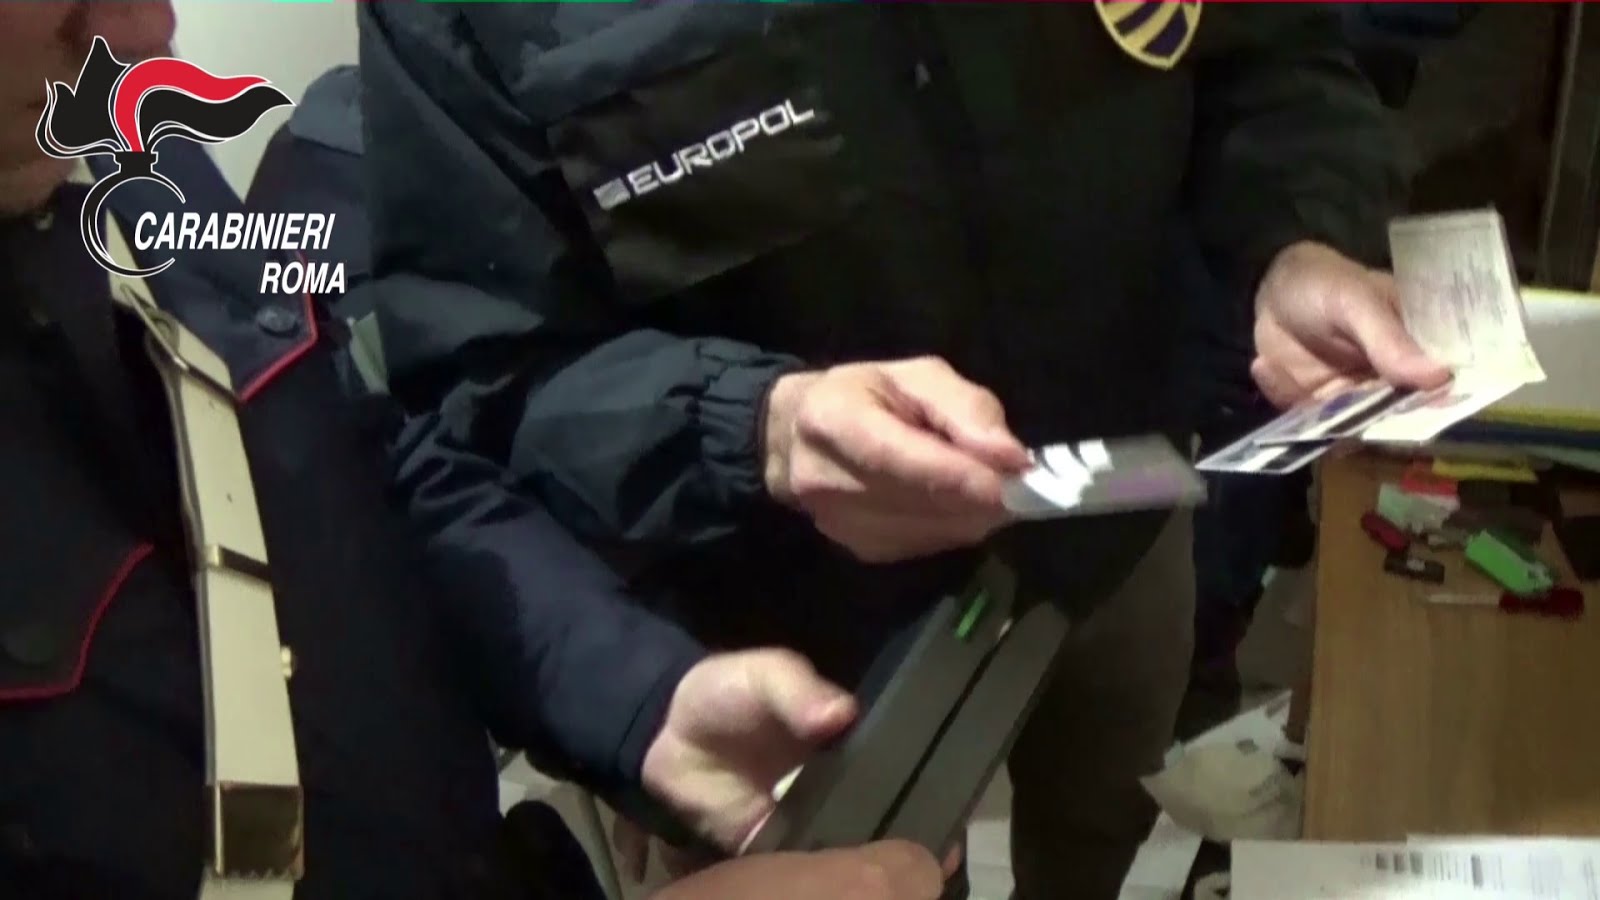 Roma, Carabinieri scoprono e arrestano banda specializzata in furti di carte di credito